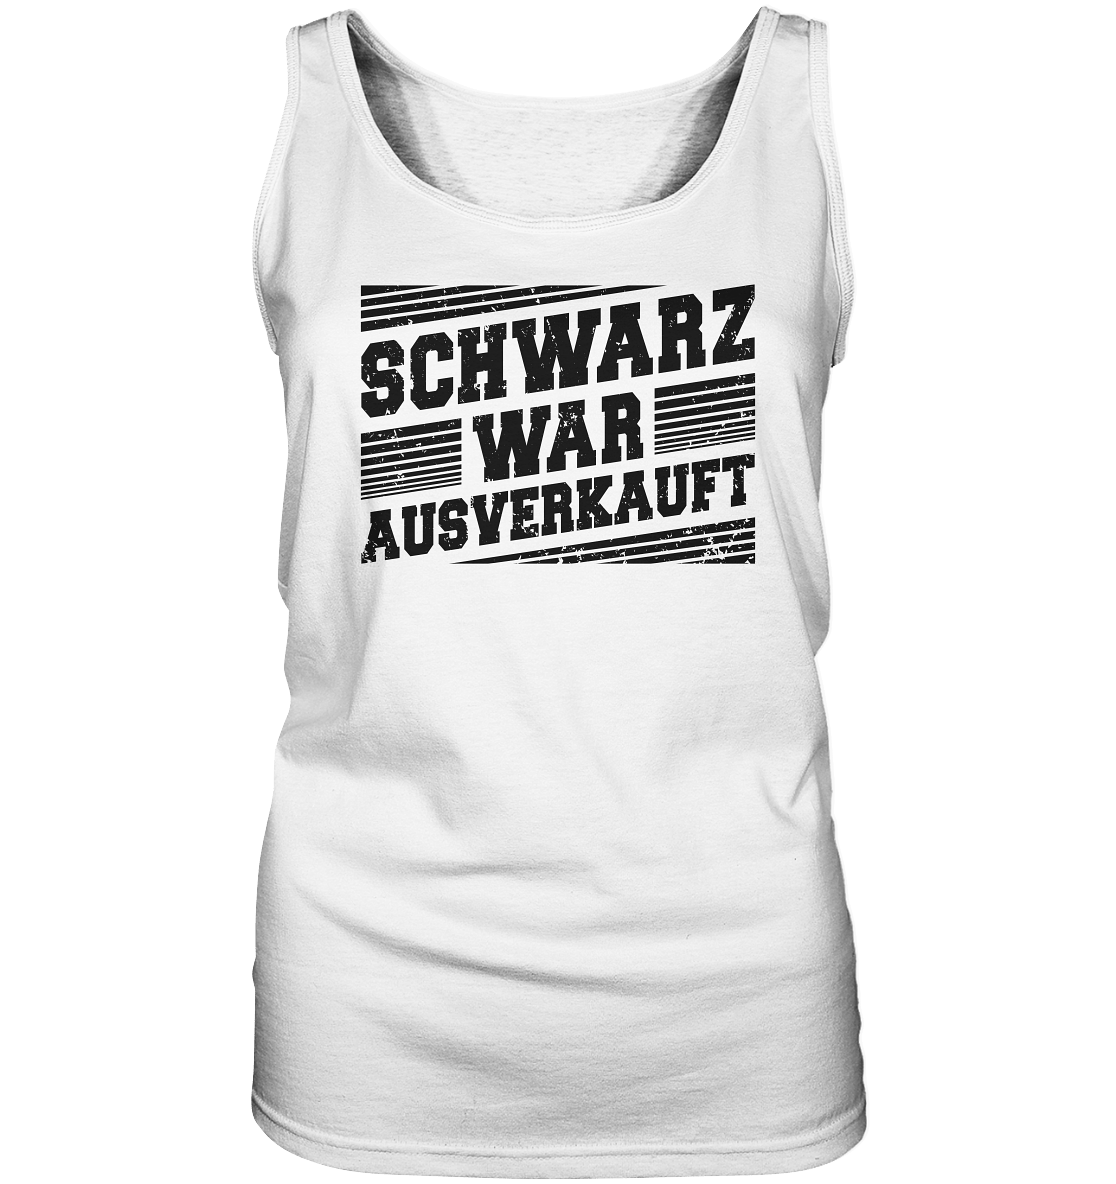 Schwarz war ausverkauft - Ladies Tank-Top - Totally Wasted